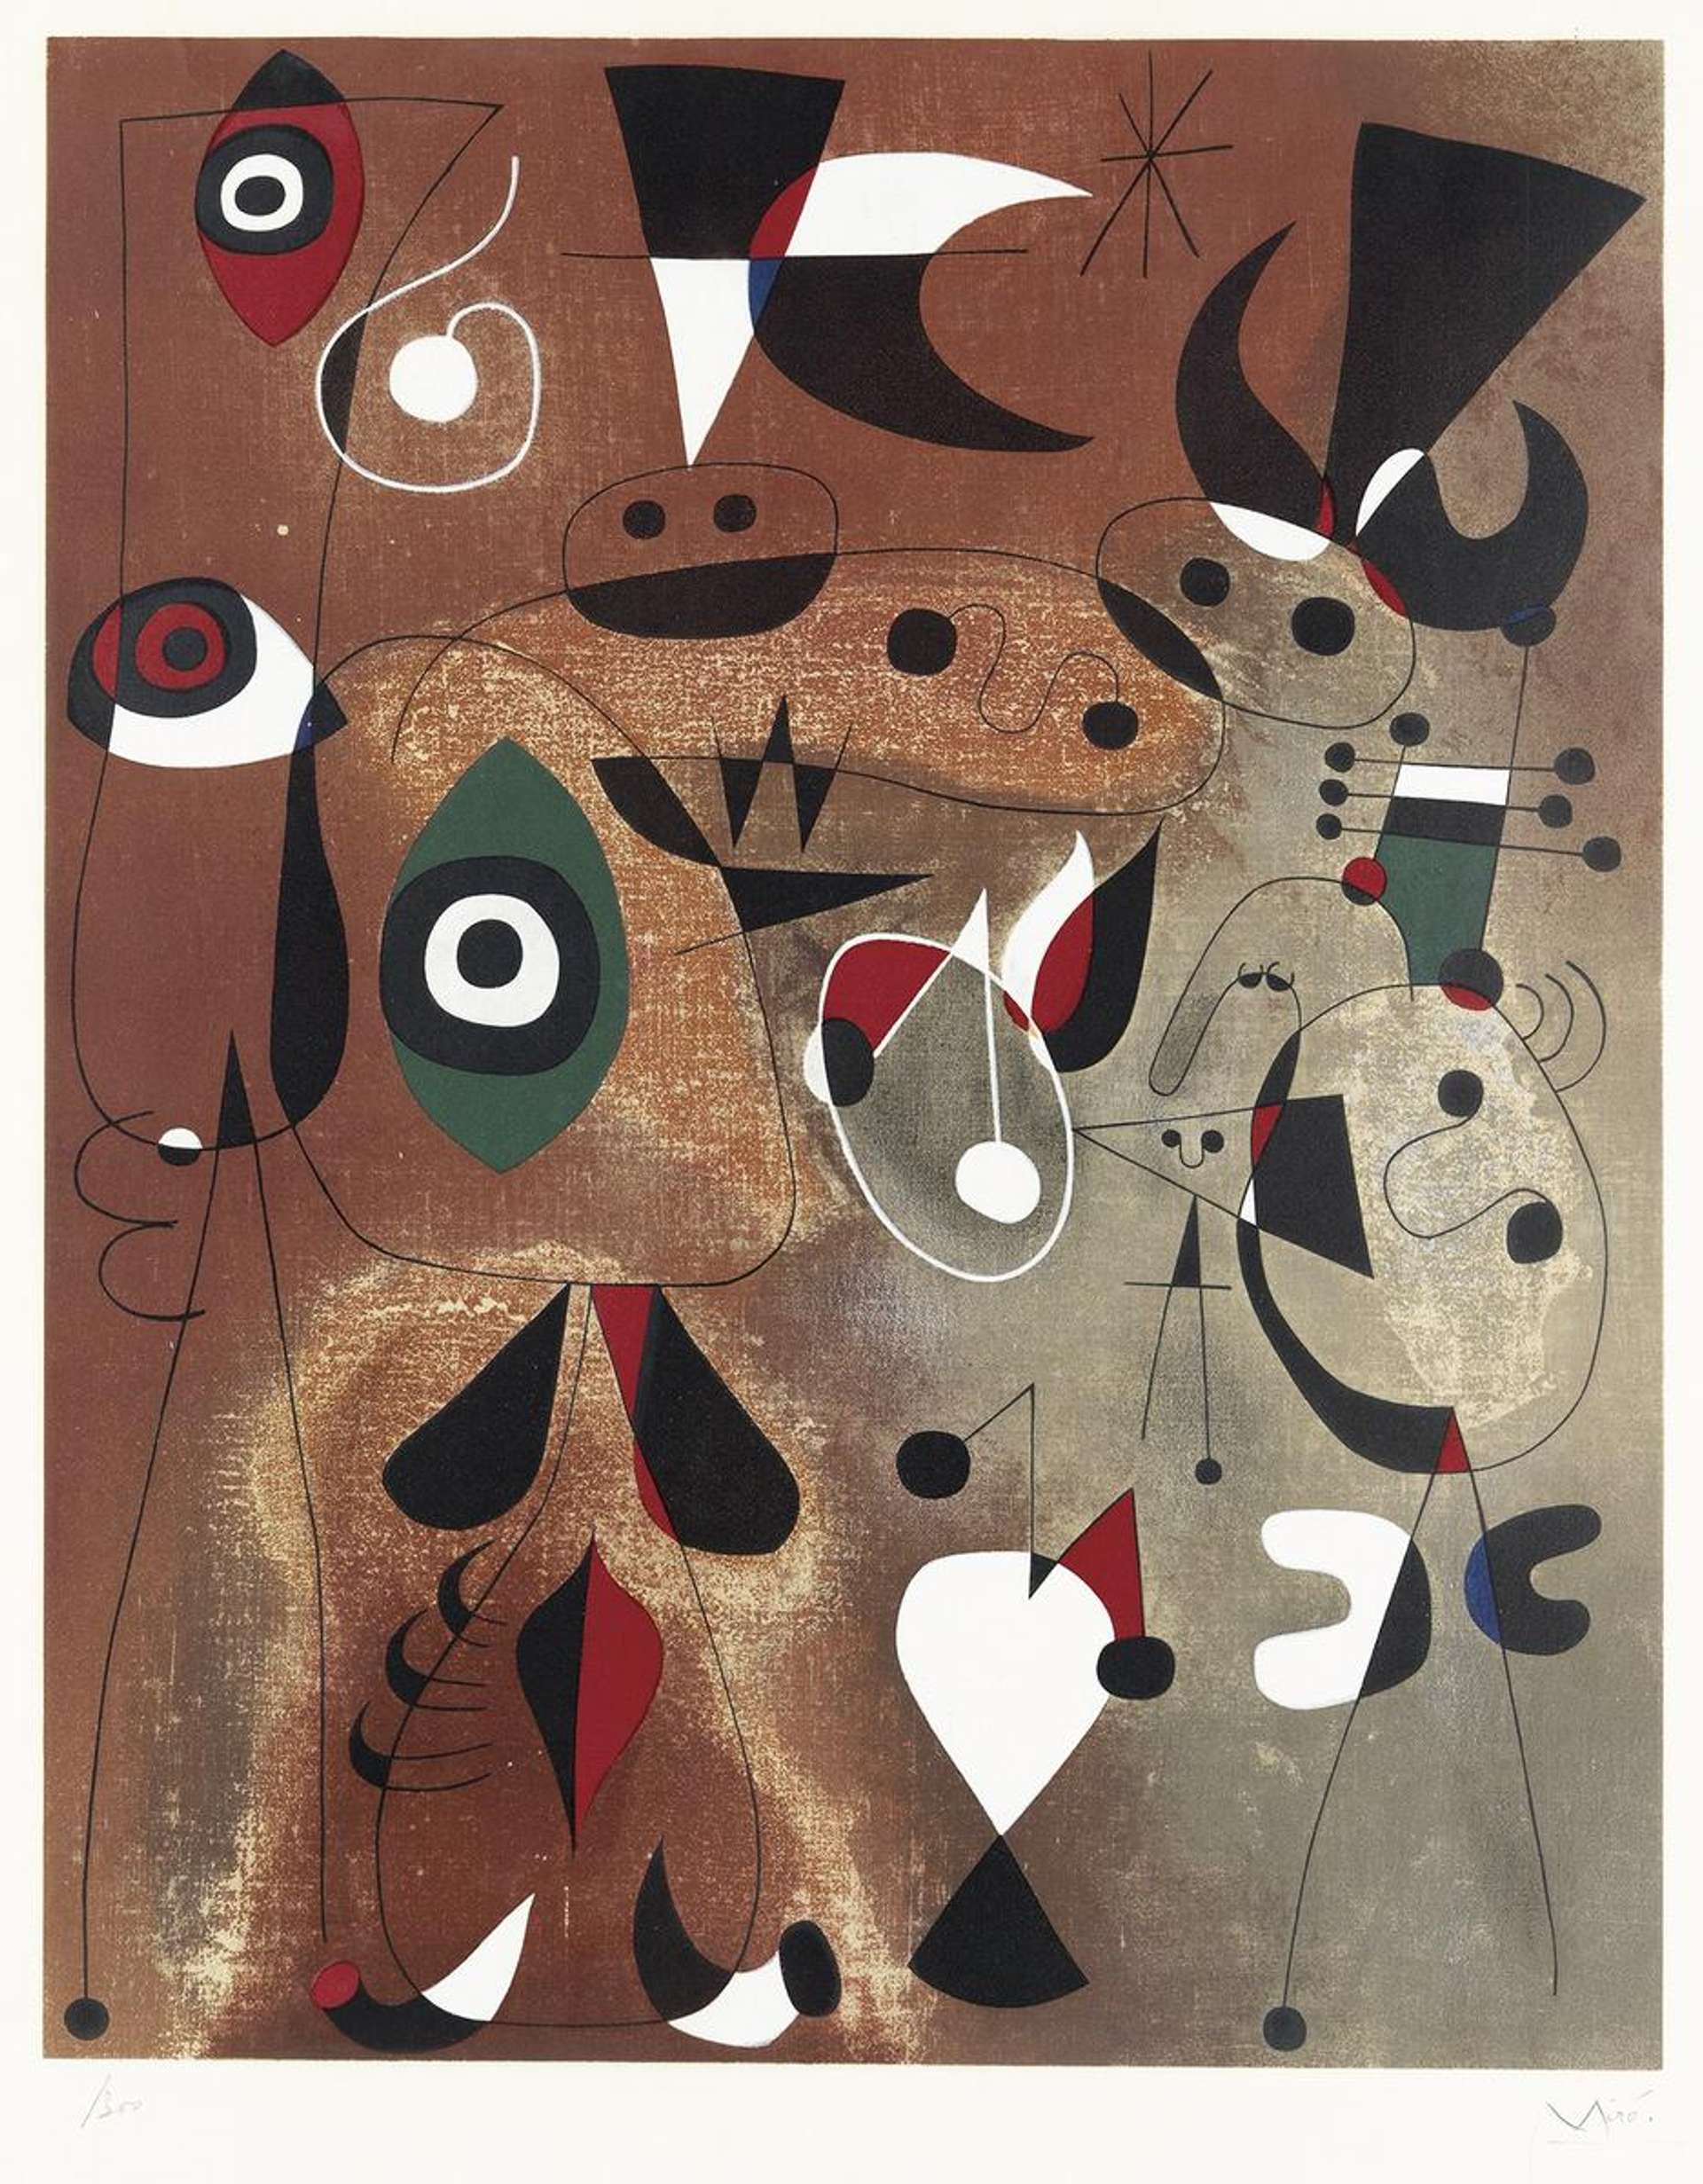 Femmes Oiseaux Et Toile - Signed Print by Joan Miró 1960 - MyArtBroker